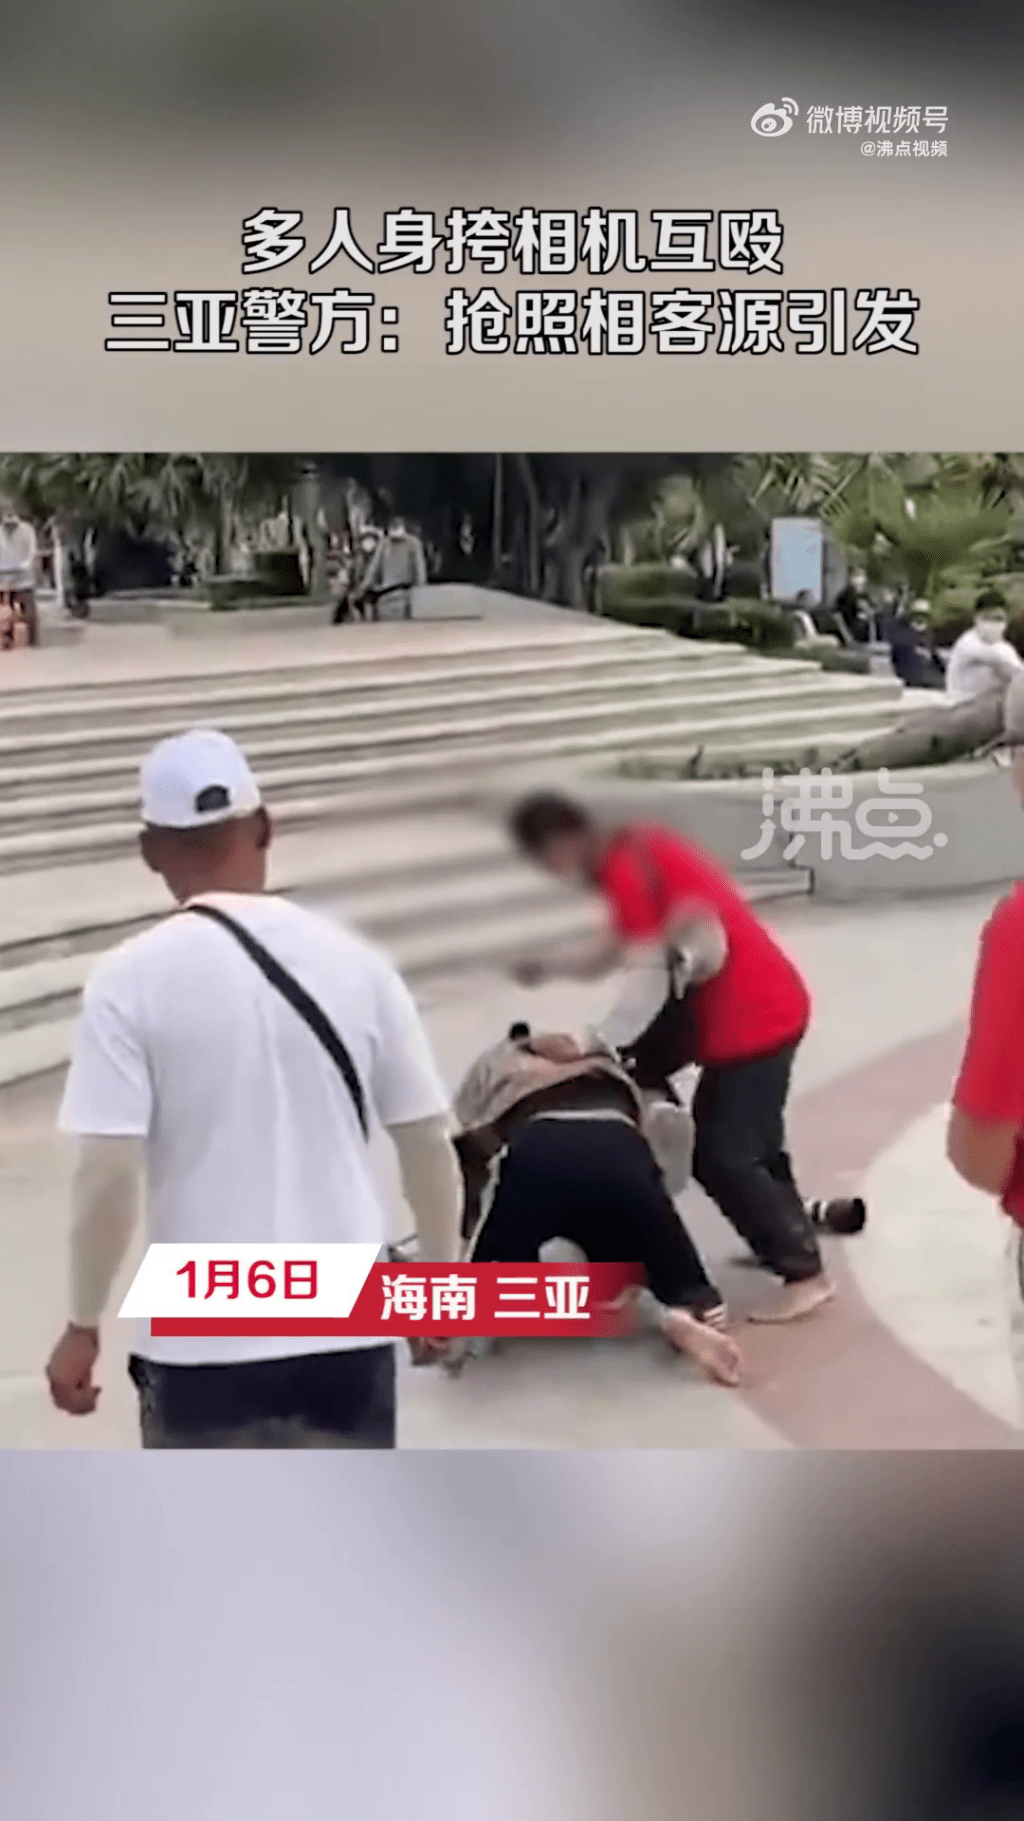 一名穿紅衫的男子將另一名男子按在地上施打。